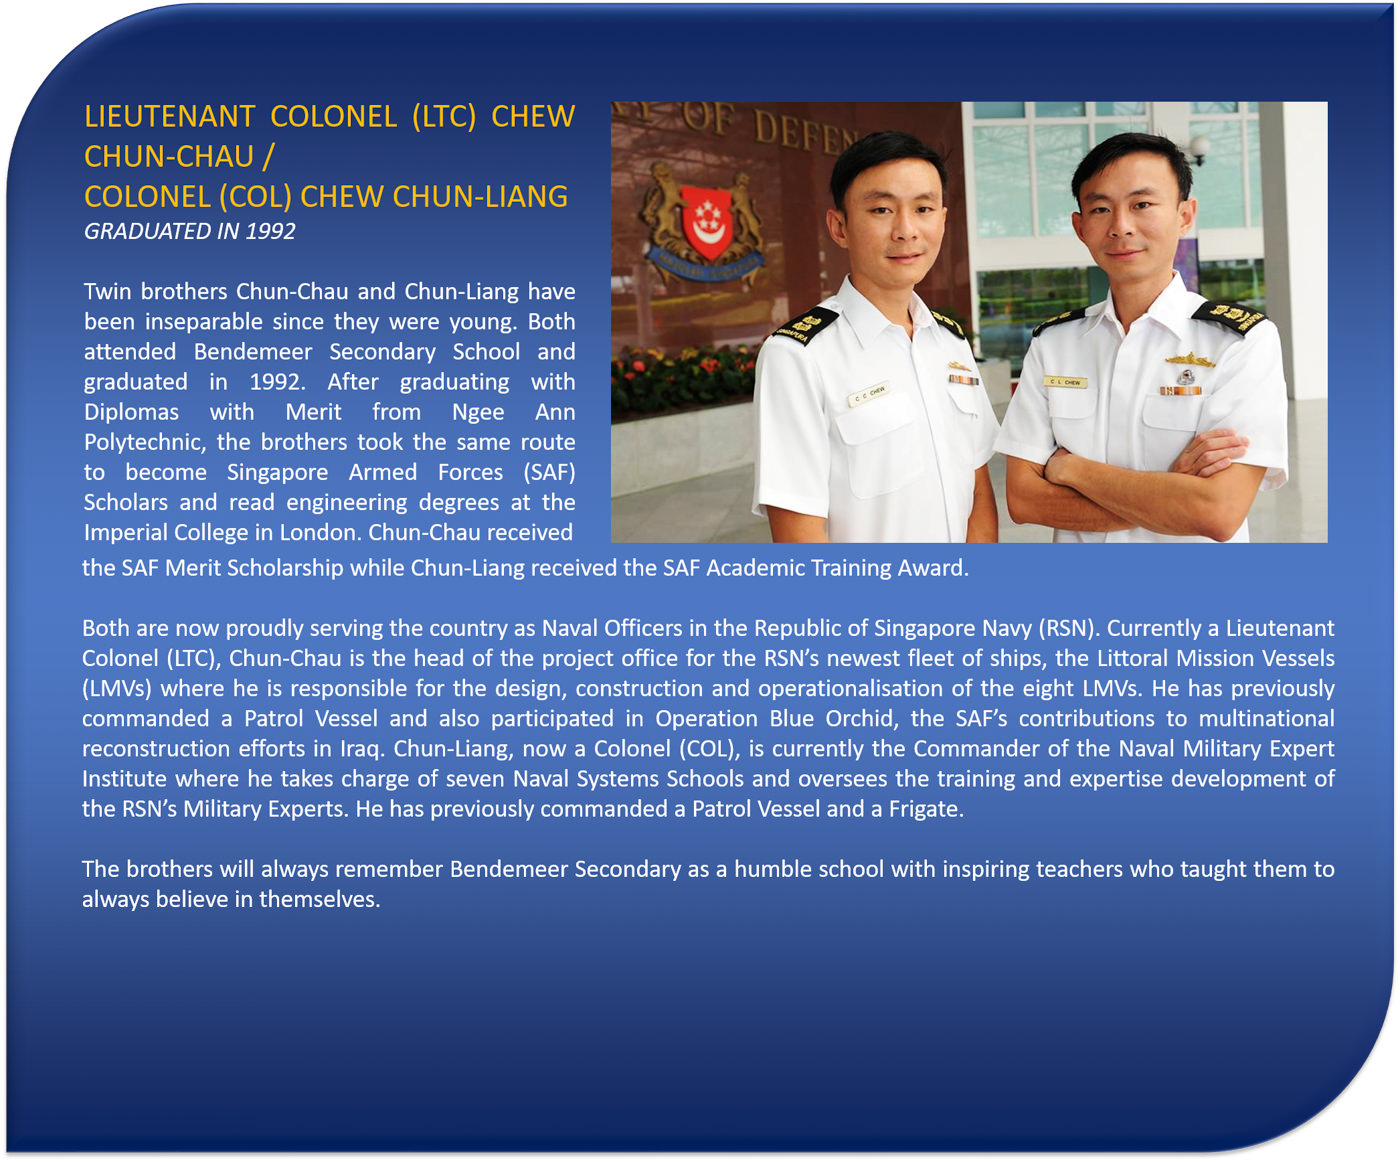 Colonel (COL) Chew Chun-Liang / Lieutenant Colonel (LTC) Chew Chun-Chau 